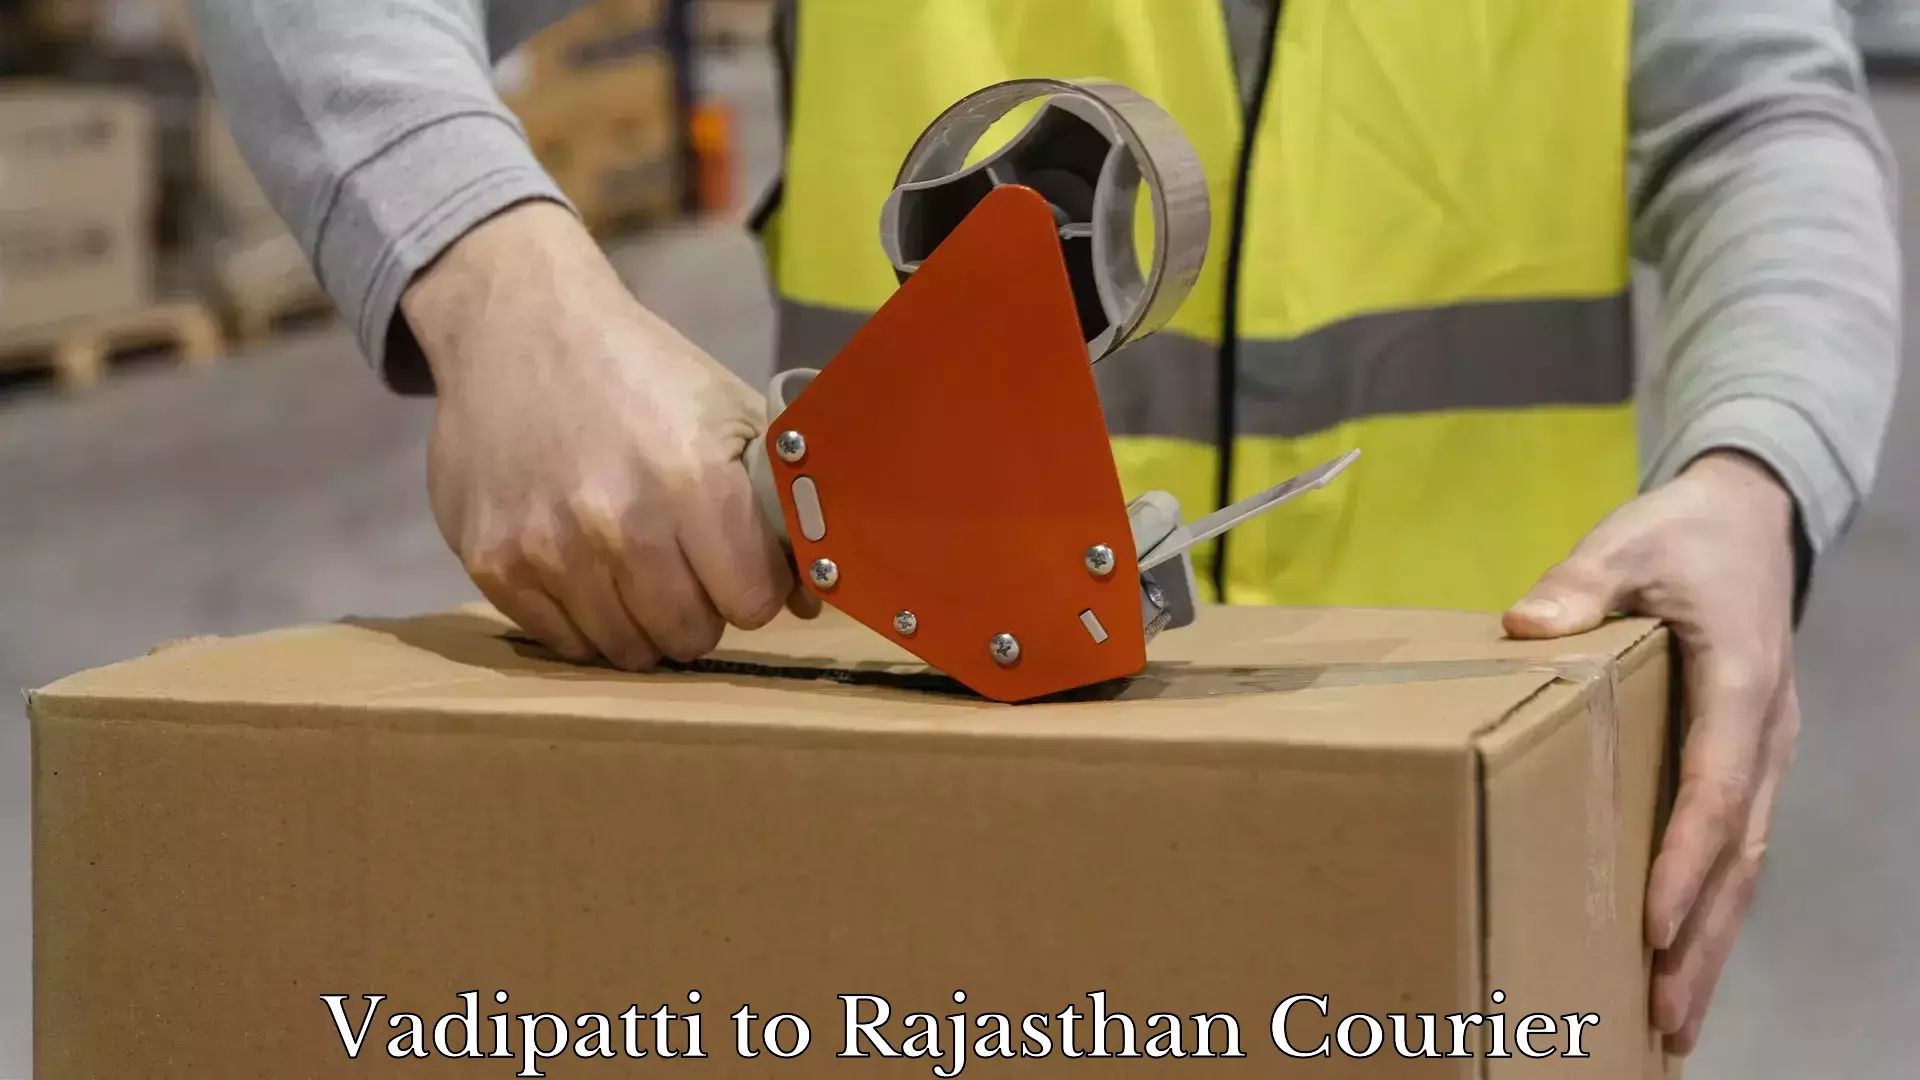 Furniture moving plans Vadipatti to Rajasthan